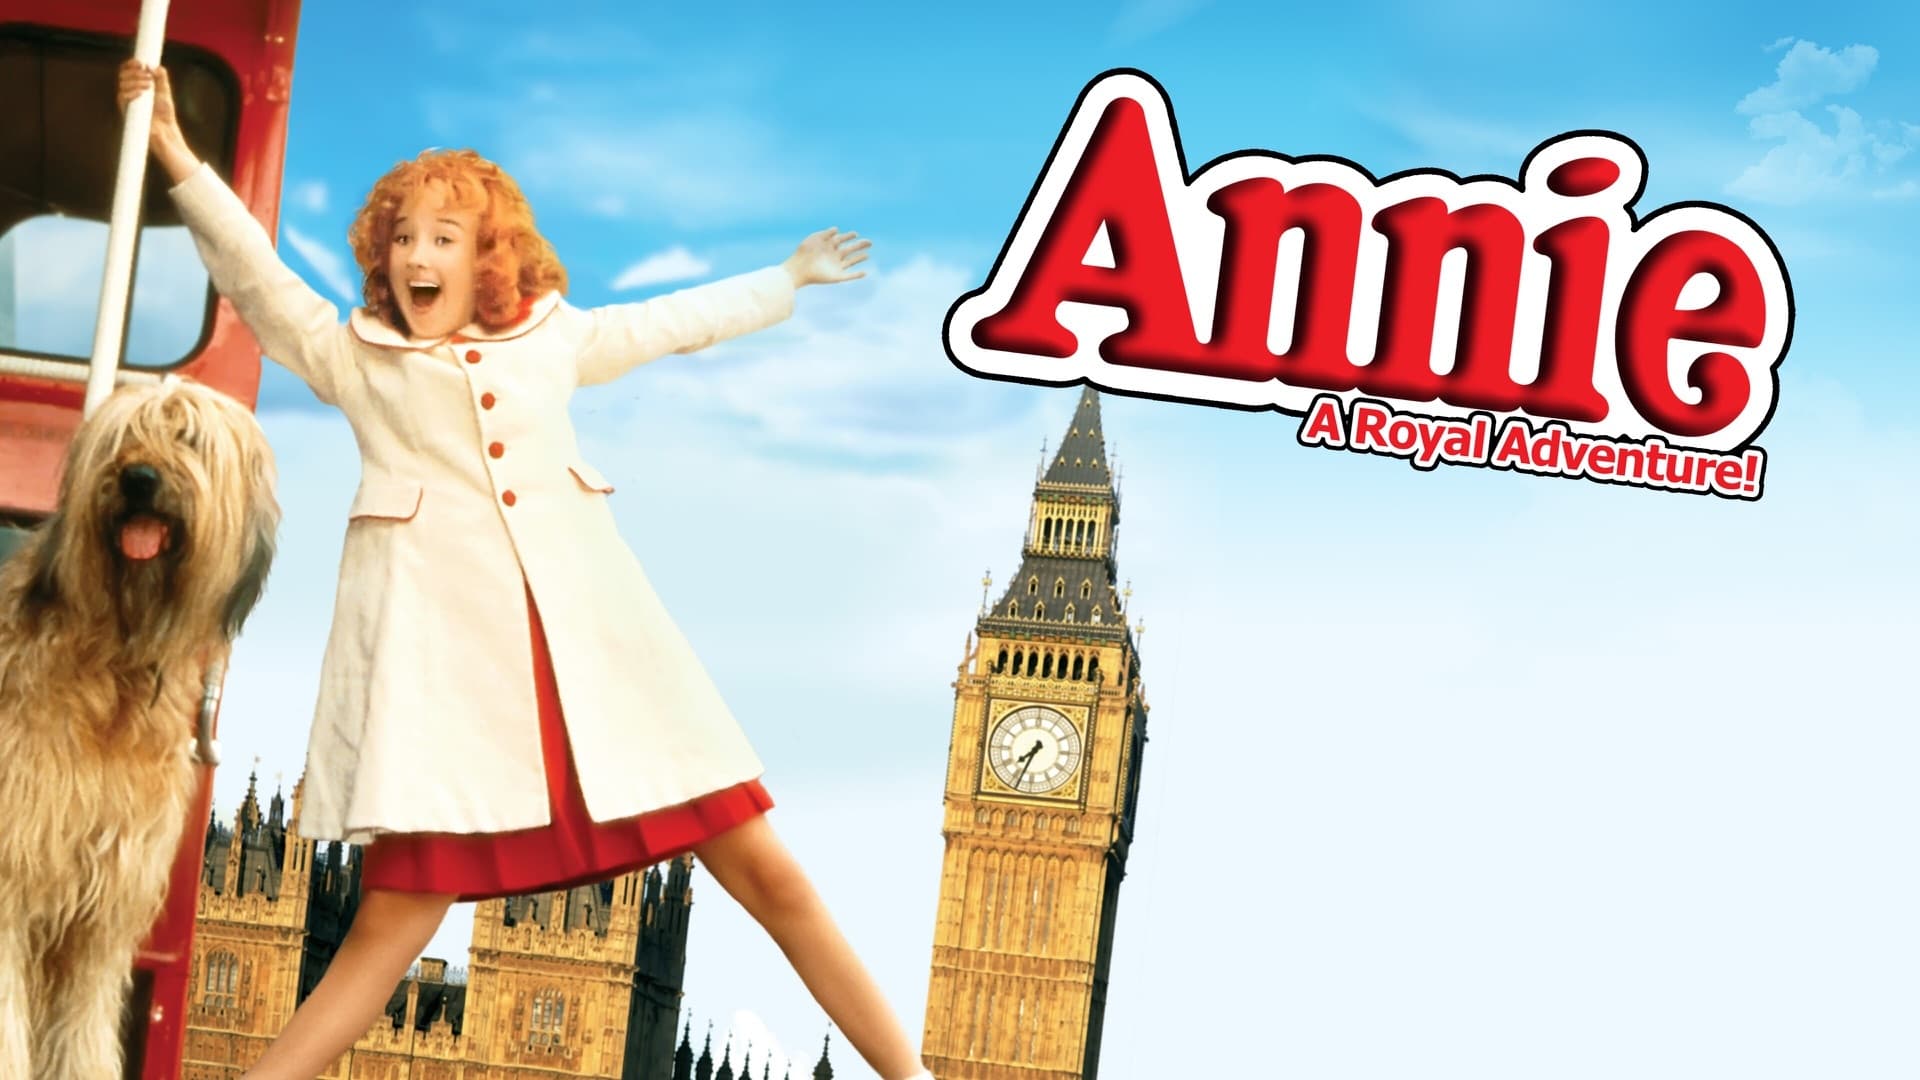 Annie királyi kalandjai